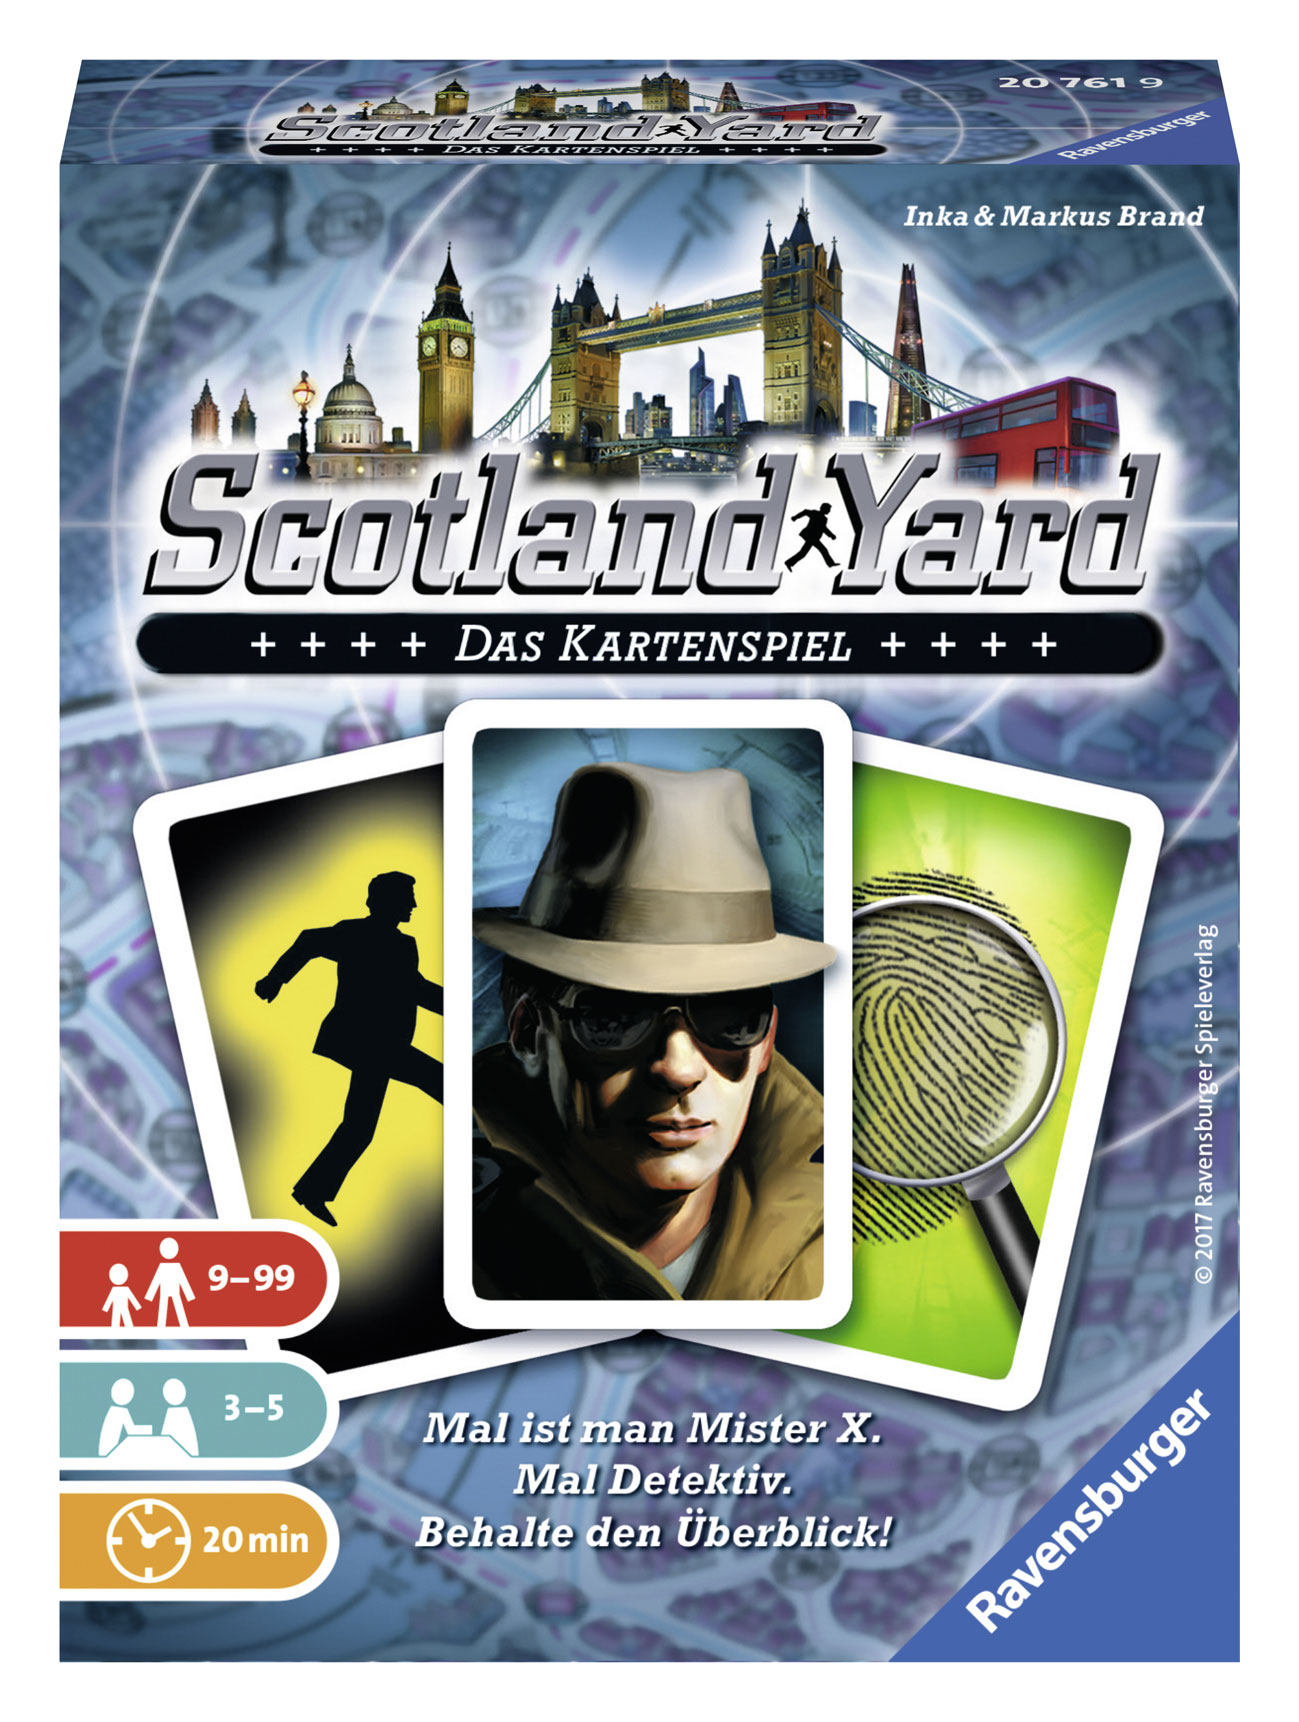 Scotland Yard – Das Kartenspiel ist erschienen